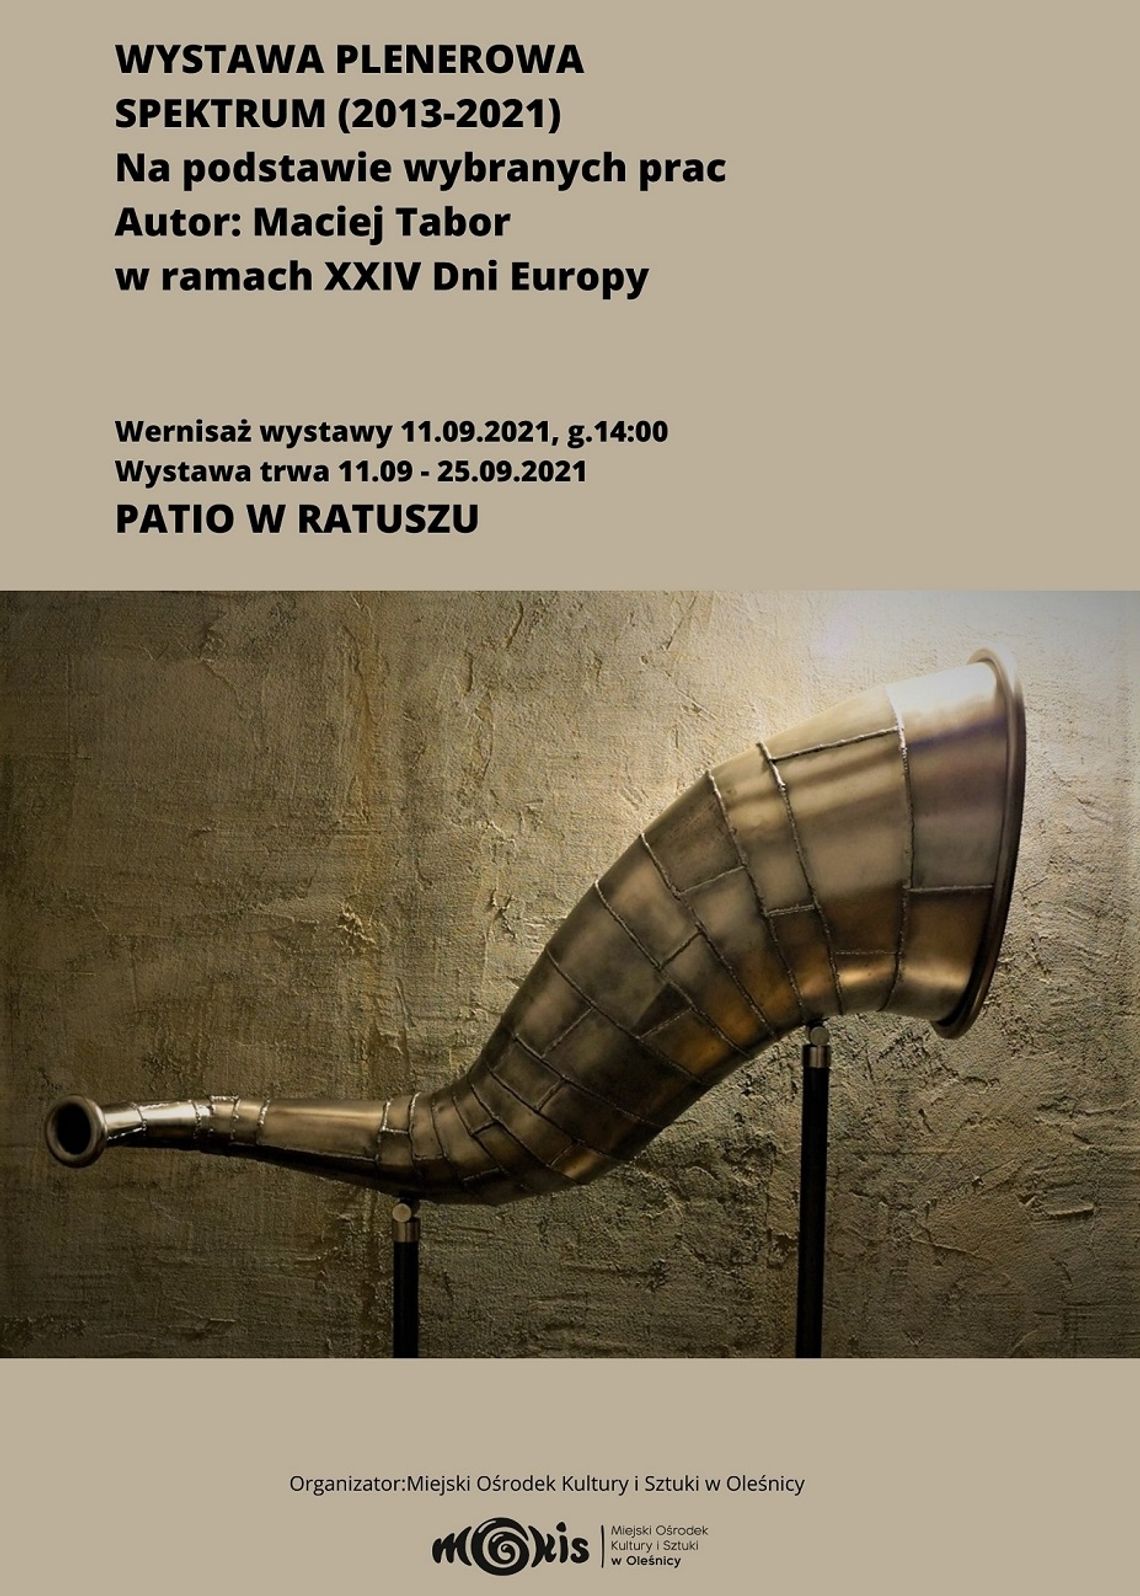 XXIV Dni Europy - wernisaż wystawy plenerowej "Spectrum" (2013-2021) na podstawie wybranych prac